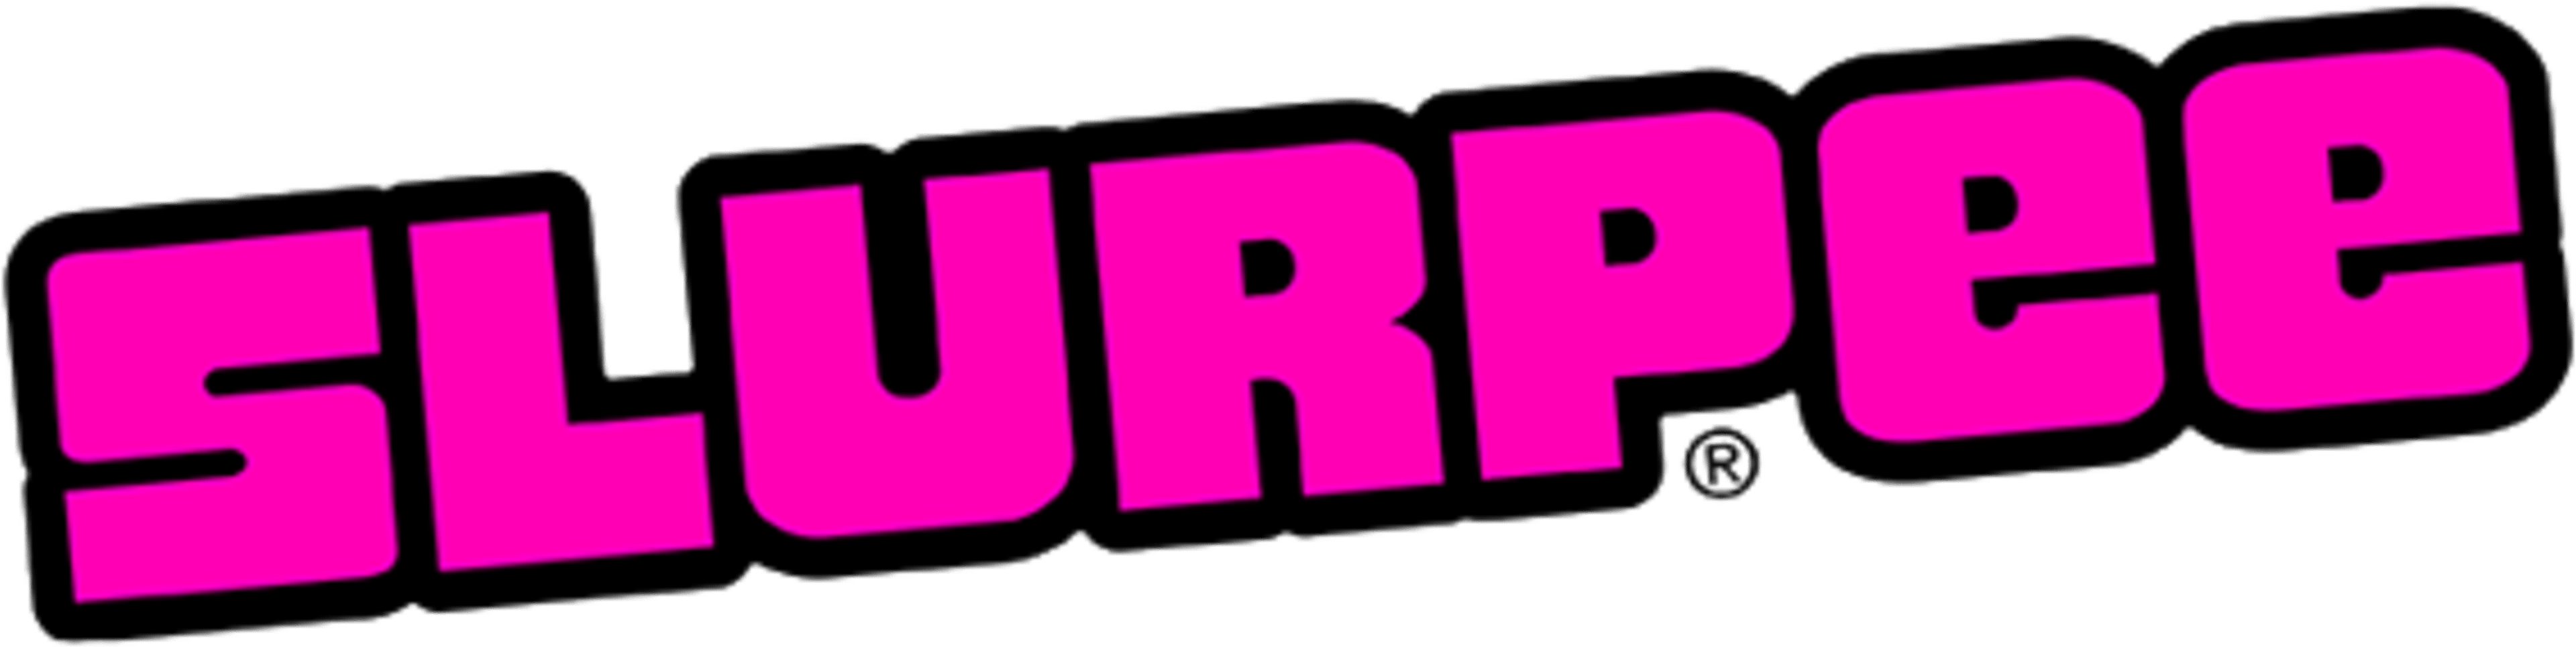 Slurpee Logo - Download Slurpee Logo - Full Size PNG Image - PNGkit